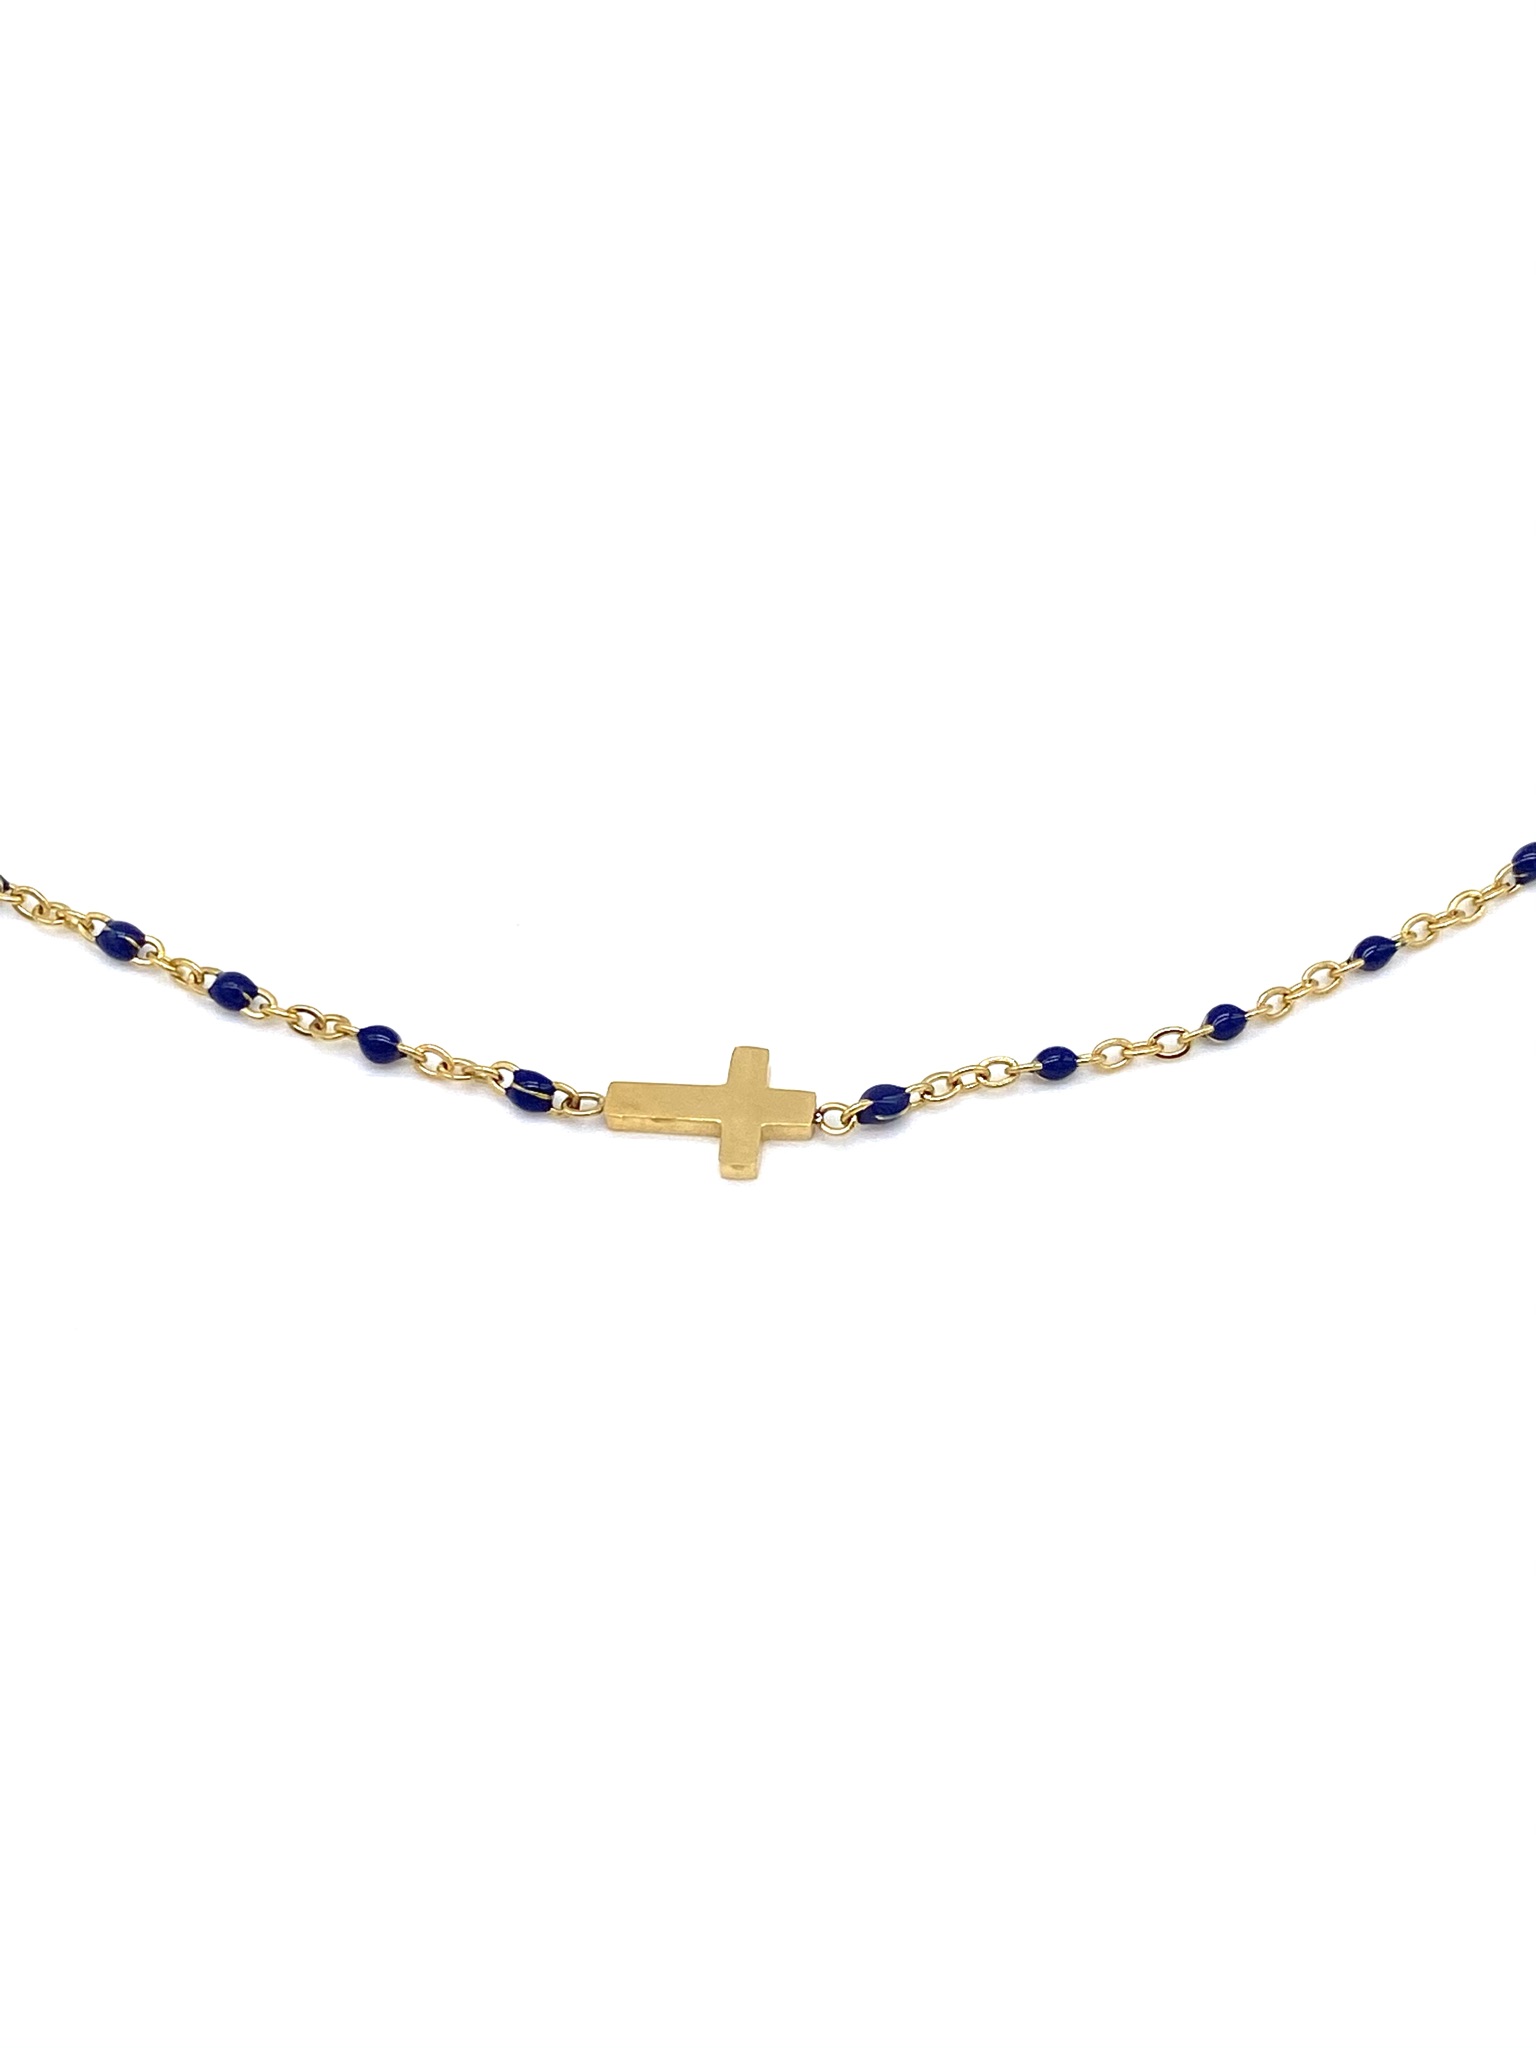 collier-perles-bleumarine-croix-doré